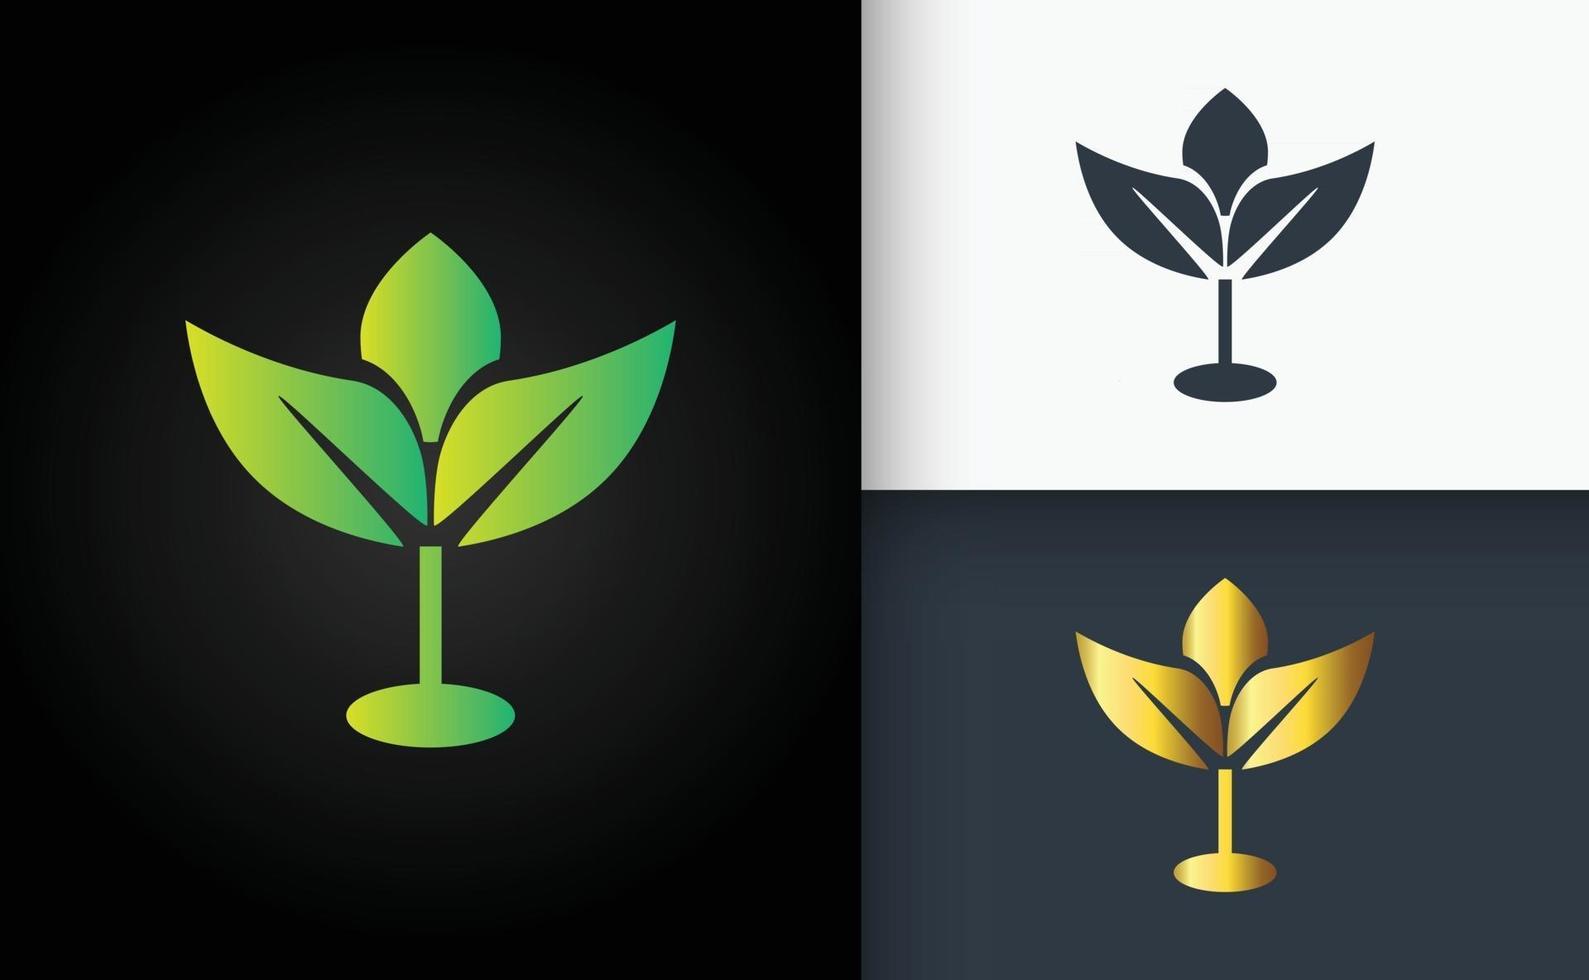 diseño de logotipo natural hoja verde dorada y negra vector